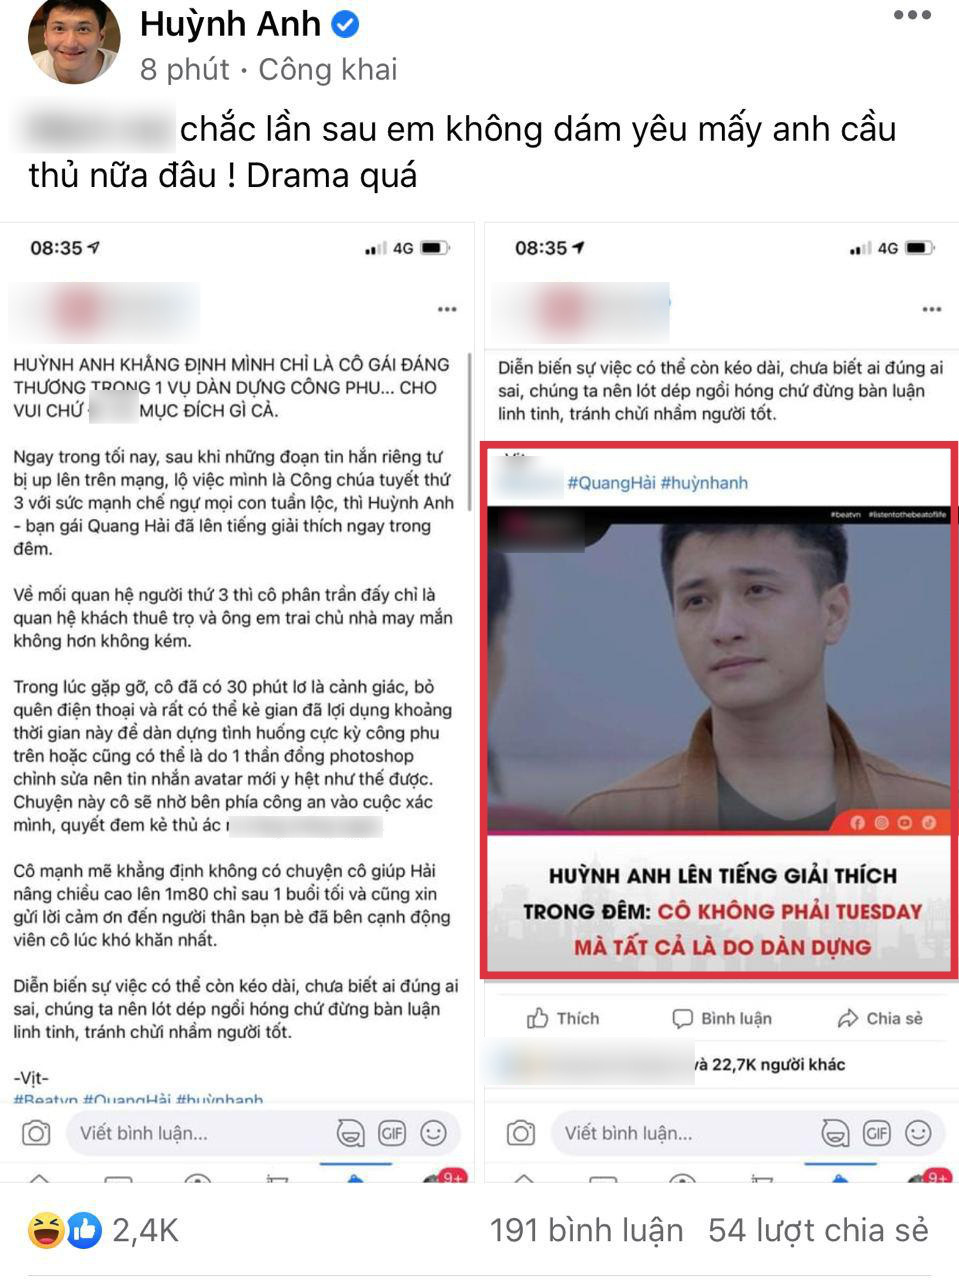 Diễn viên Huỳnh Anh lên tiếng khi bị réo tên trong vụ Quang Hải chia tay bạn gái: Chắc lần sau em không dám yêu mấy anh cầu thủ nữa đâu - Ảnh 3.